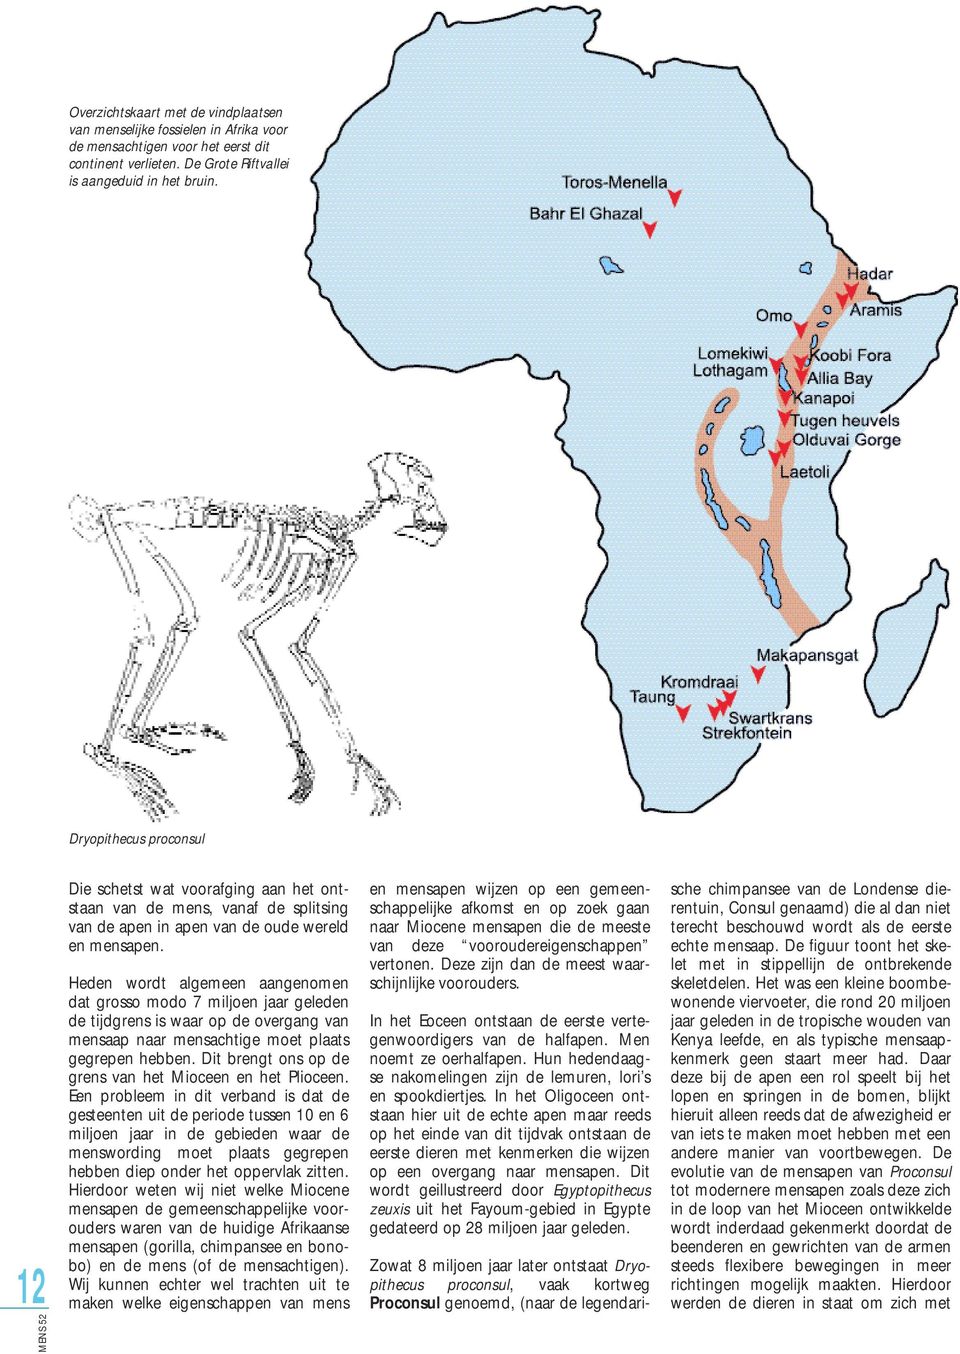 Heden wordt algemeen aangenomen dat grosso modo 7 miljoen jaar geleden de tijdgrens is waar op de overgang van mensaap naar mensachtige moet plaats gegrepen hebben.